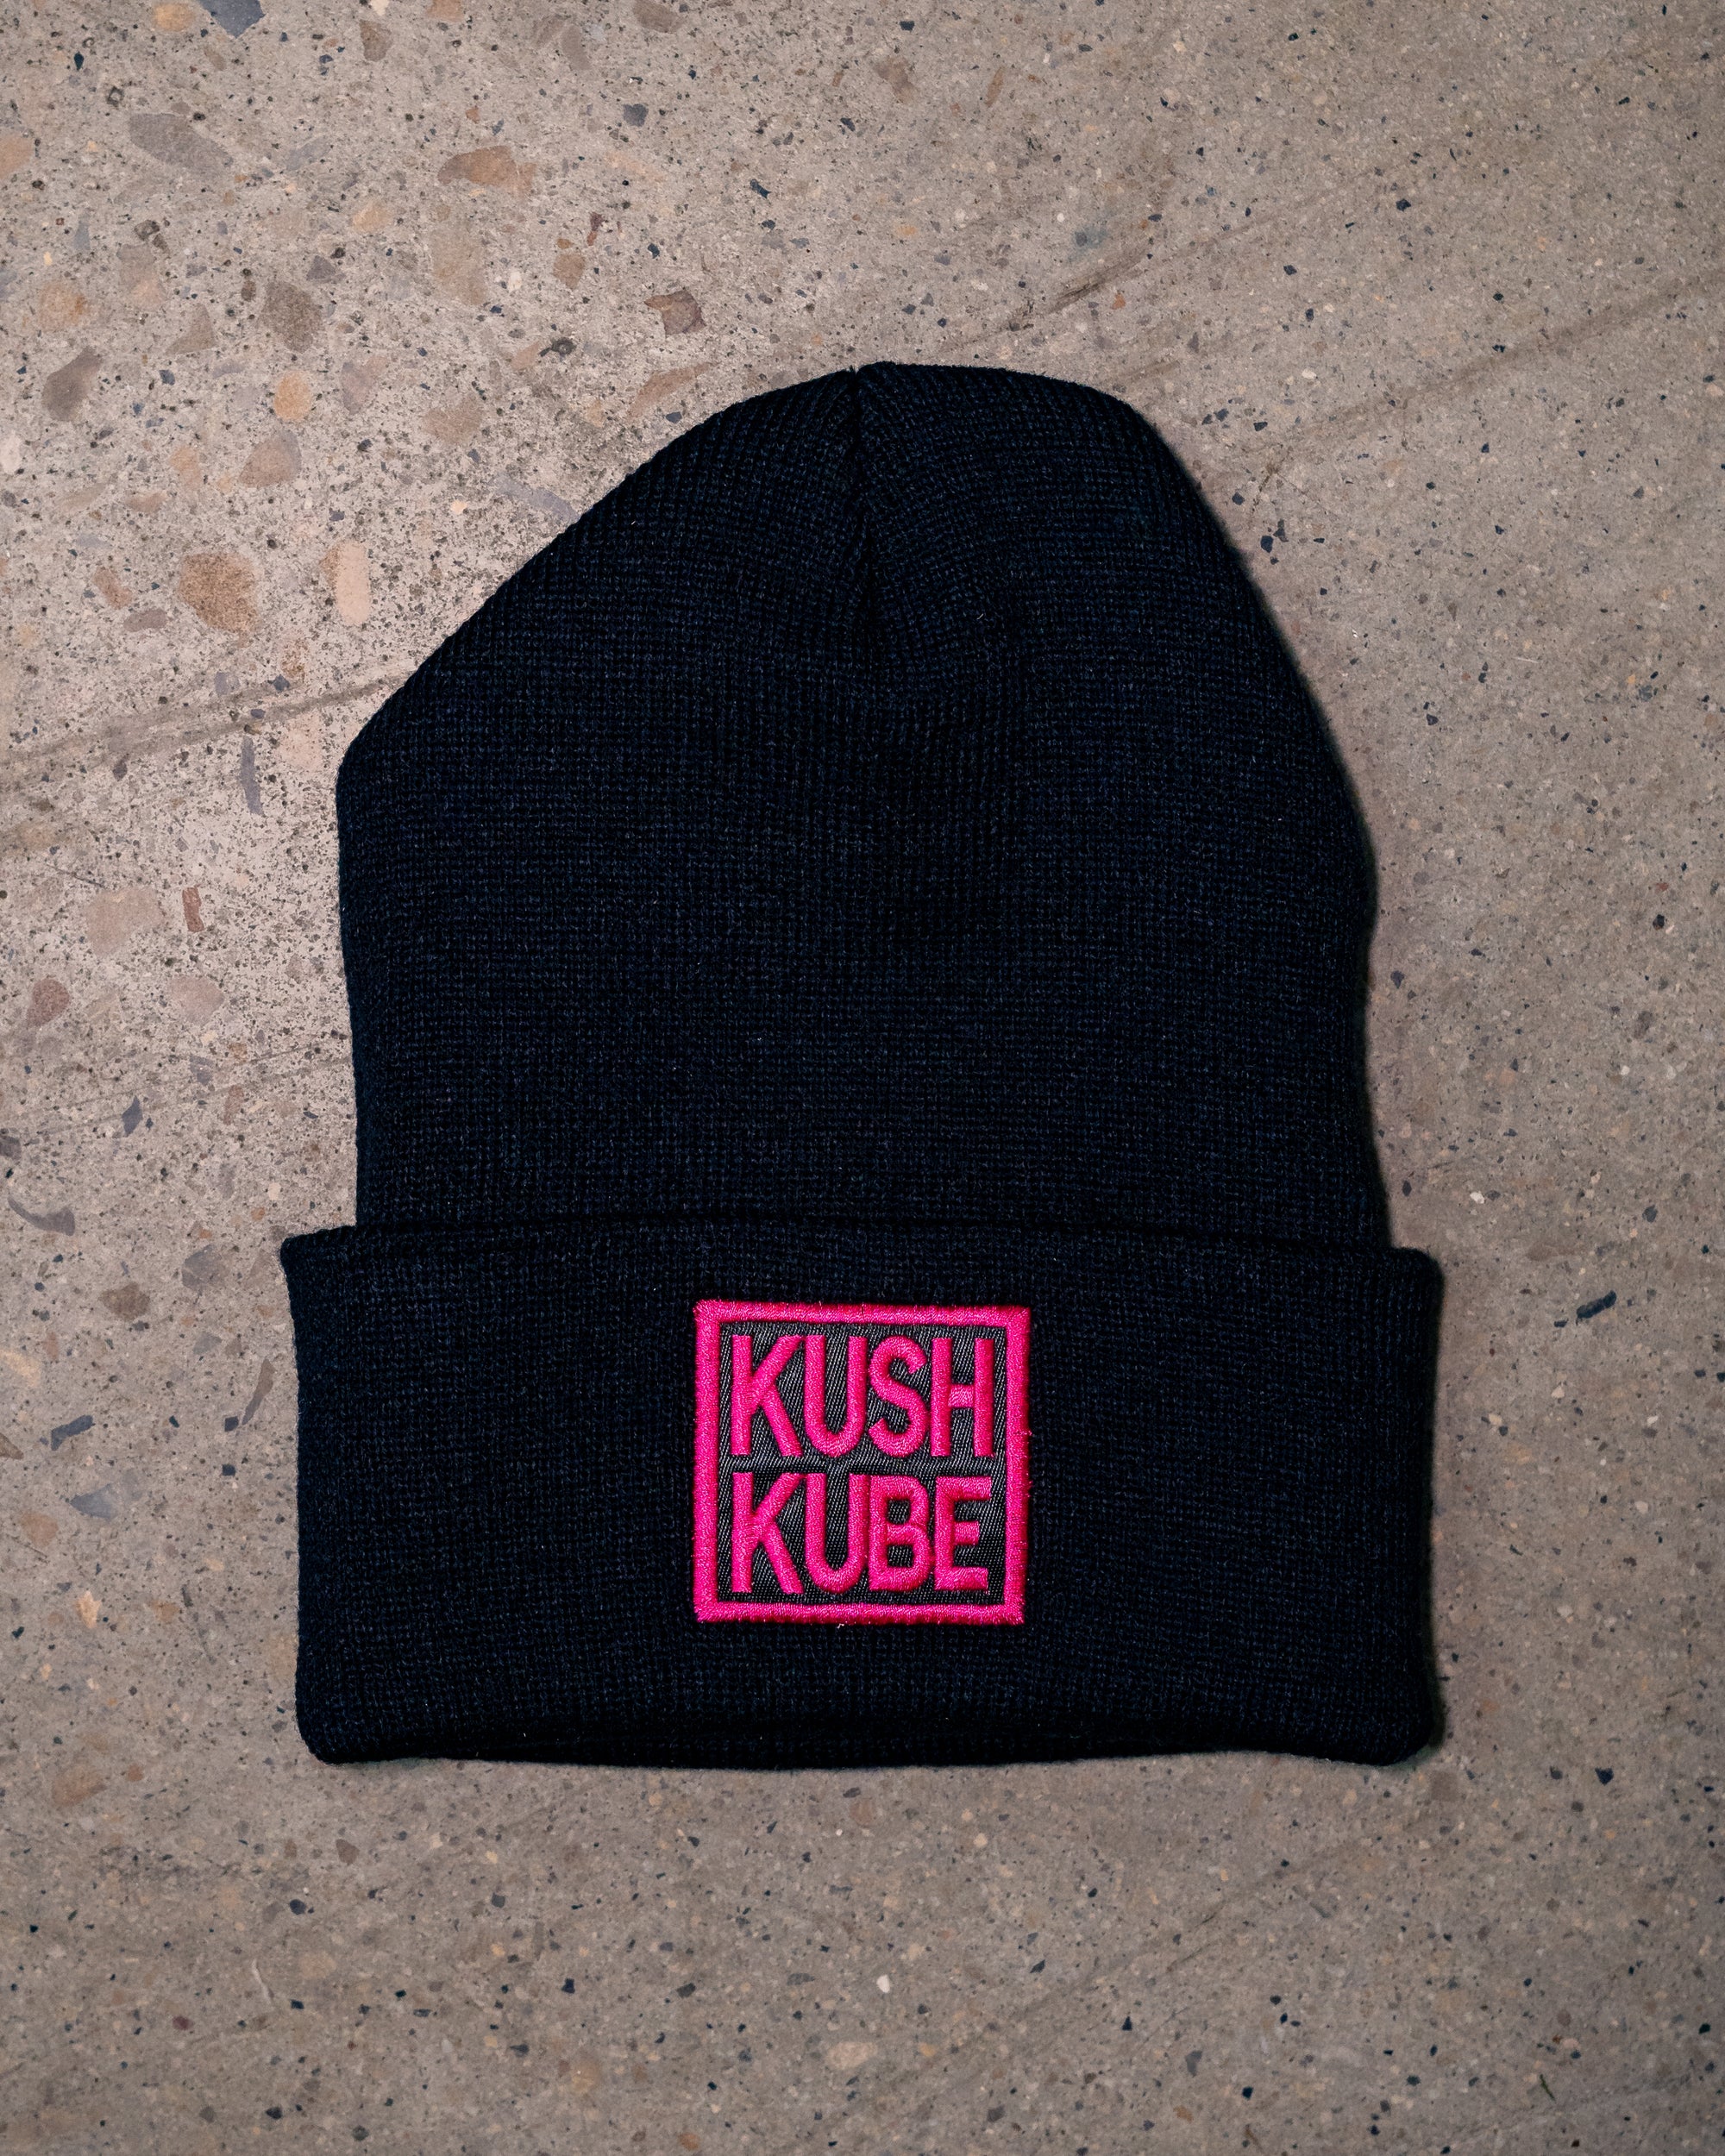 Kush Kube Hat Beanie (Neon Pink Logo)